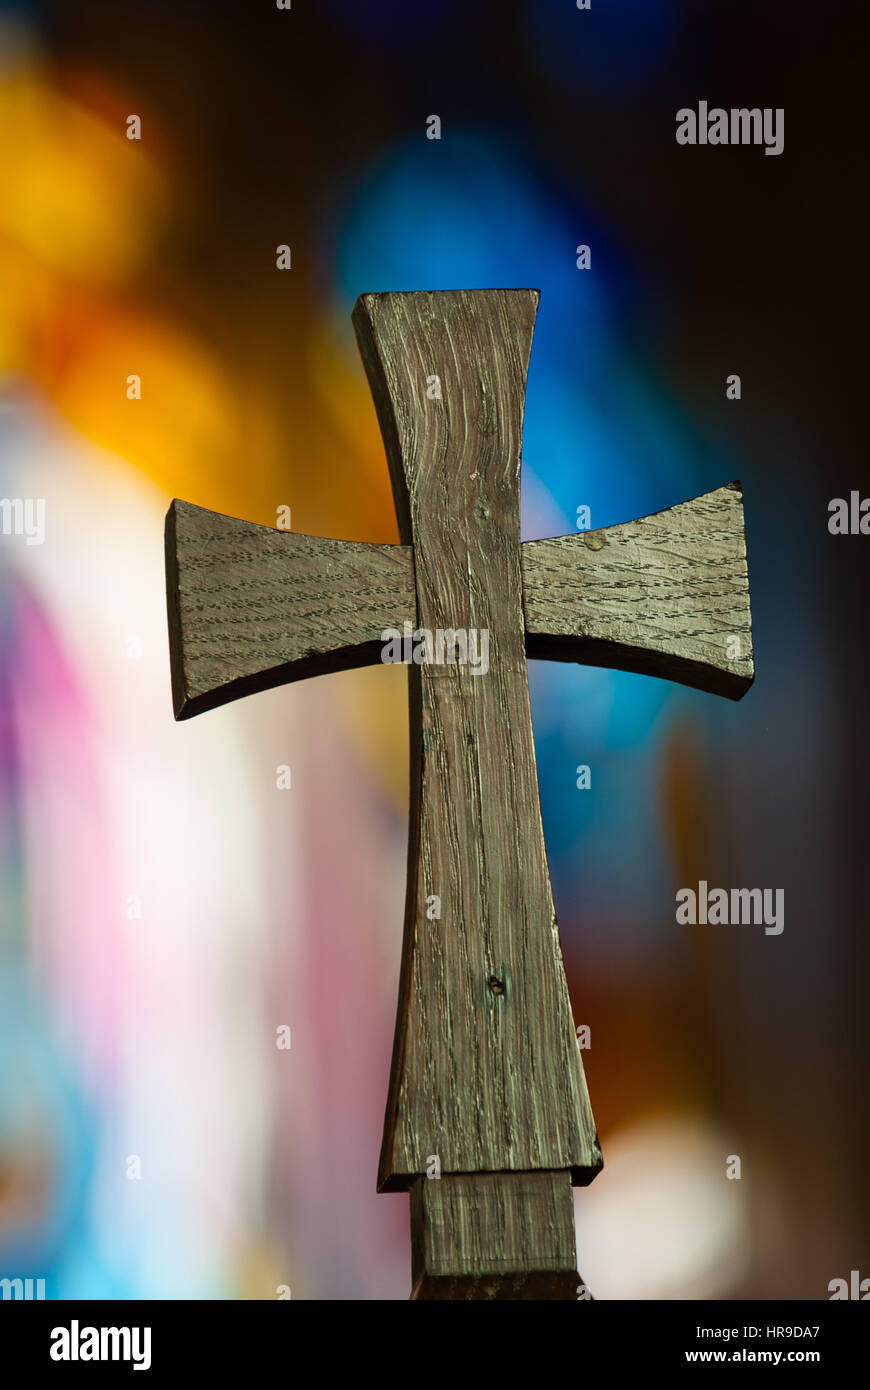 Cruzada religiosa contra una vidriera borrosa. Foto de stock